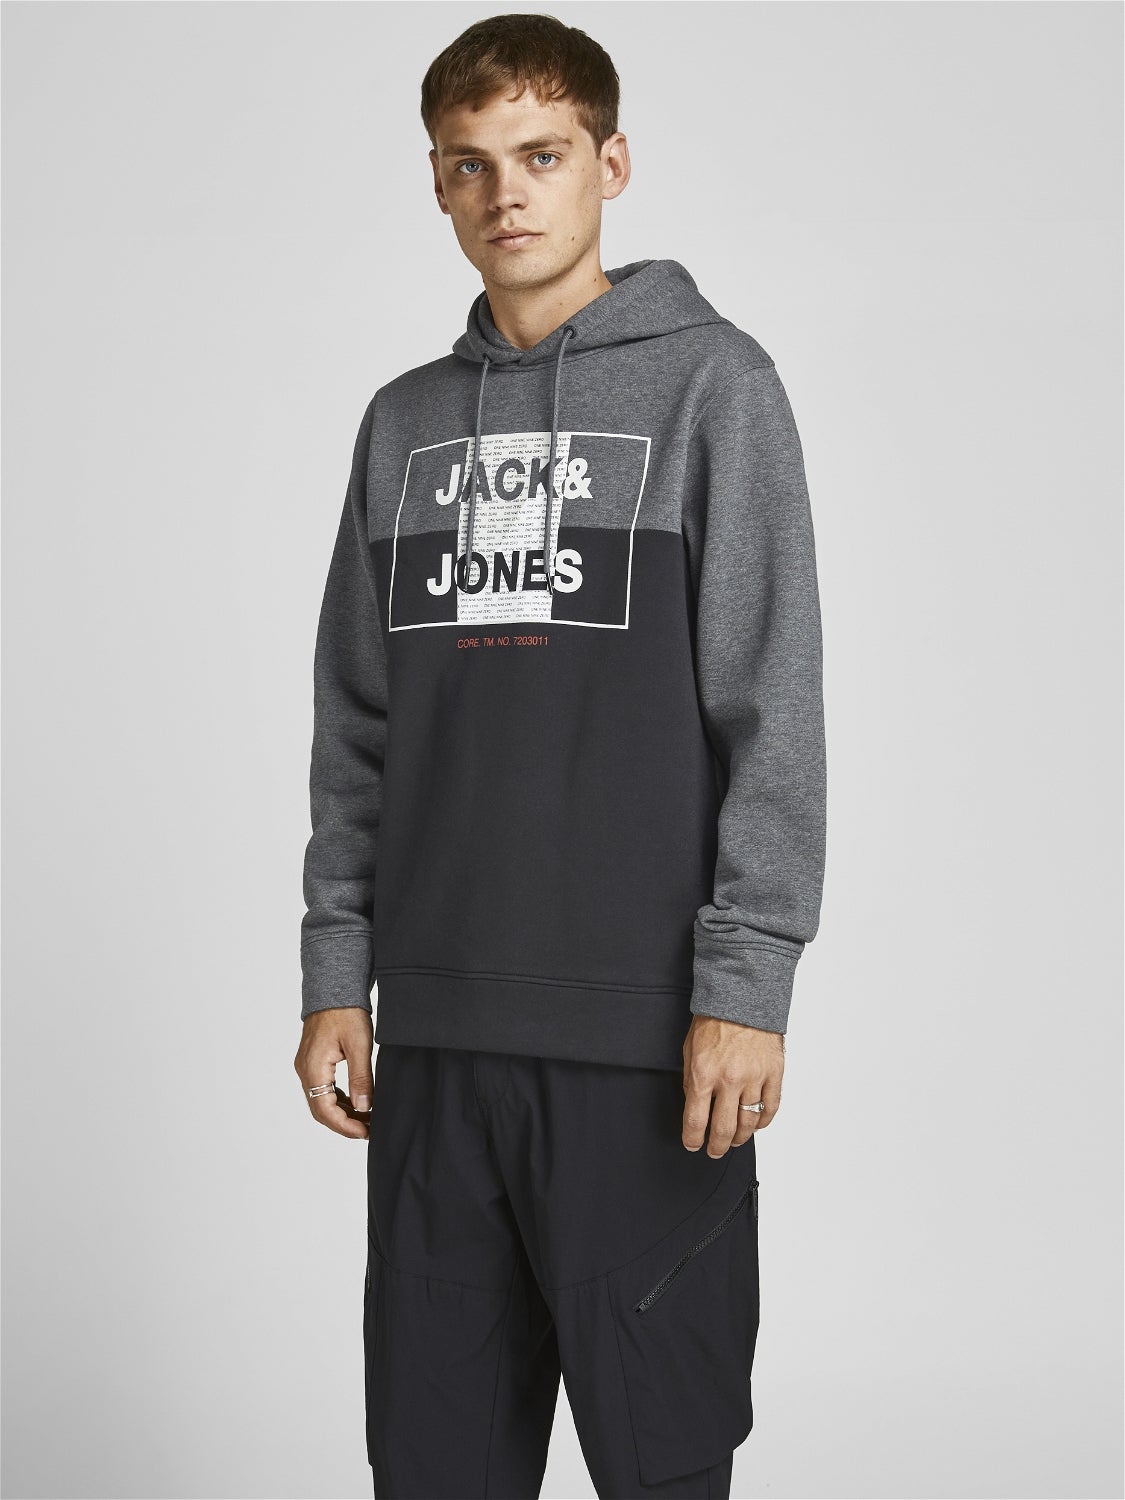 HERREN Pullovers & Sweatshirts Hoodie Jack & Jones sweatshirt Braun XL Rabatt 58 % 